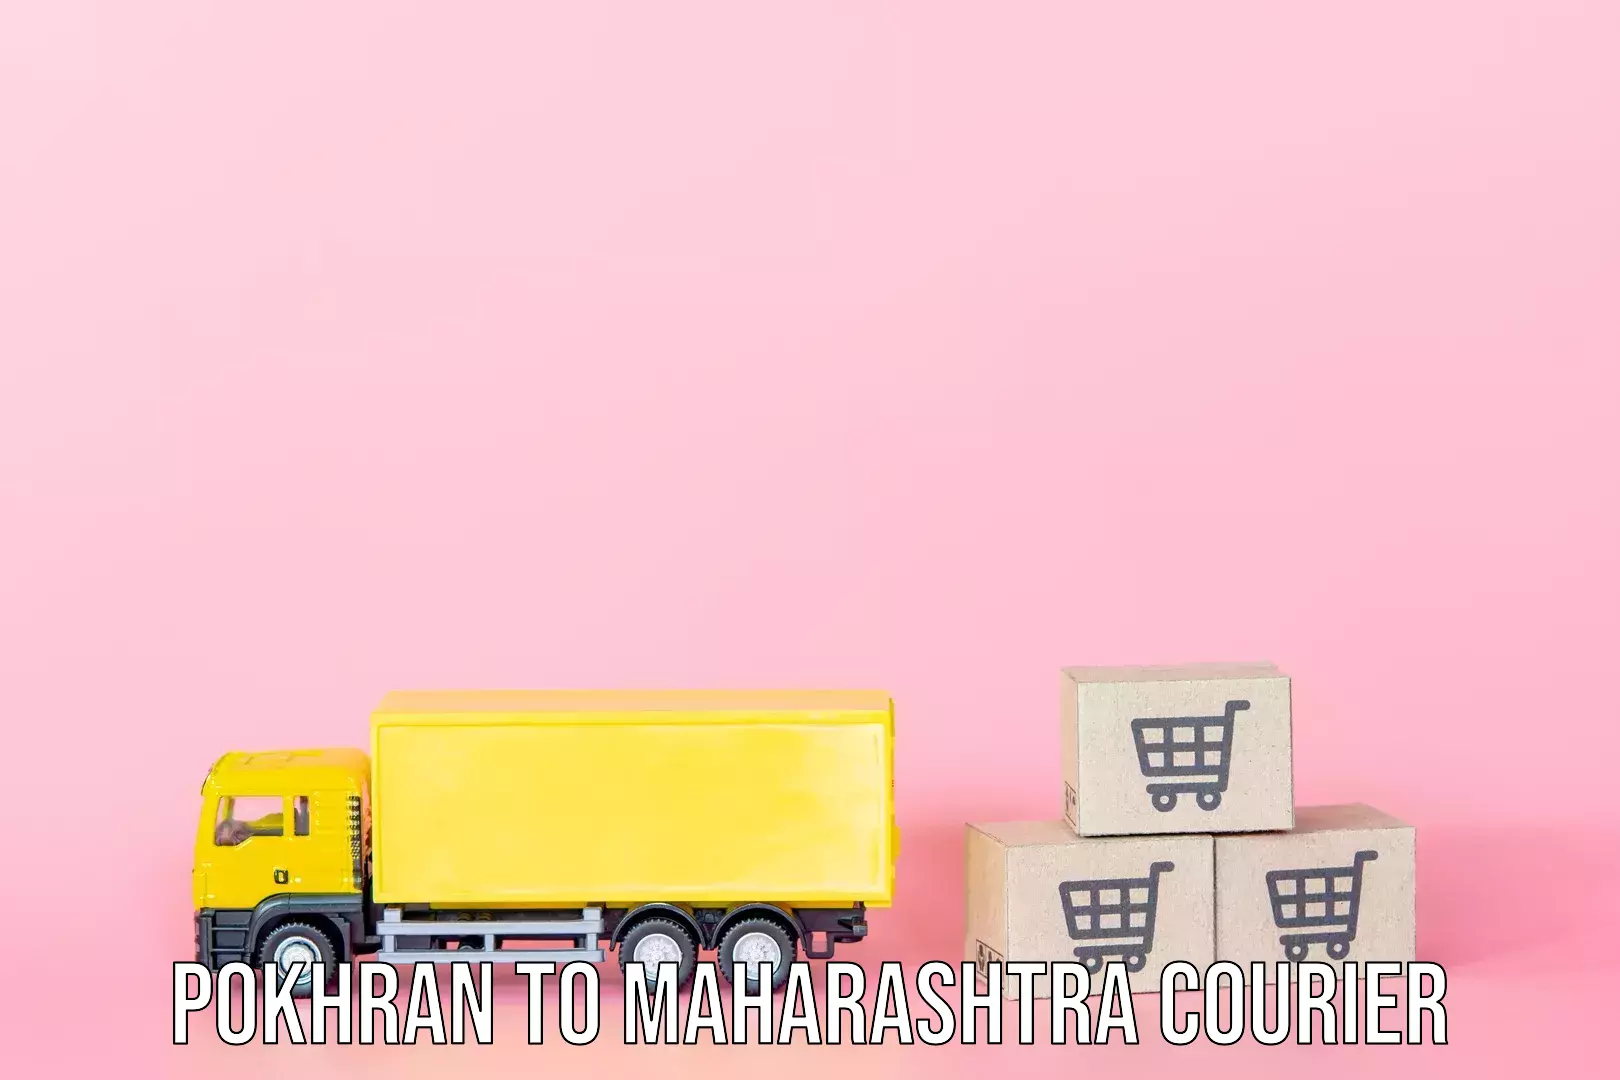 Baggage relocation service Pokhran to Maharashtra